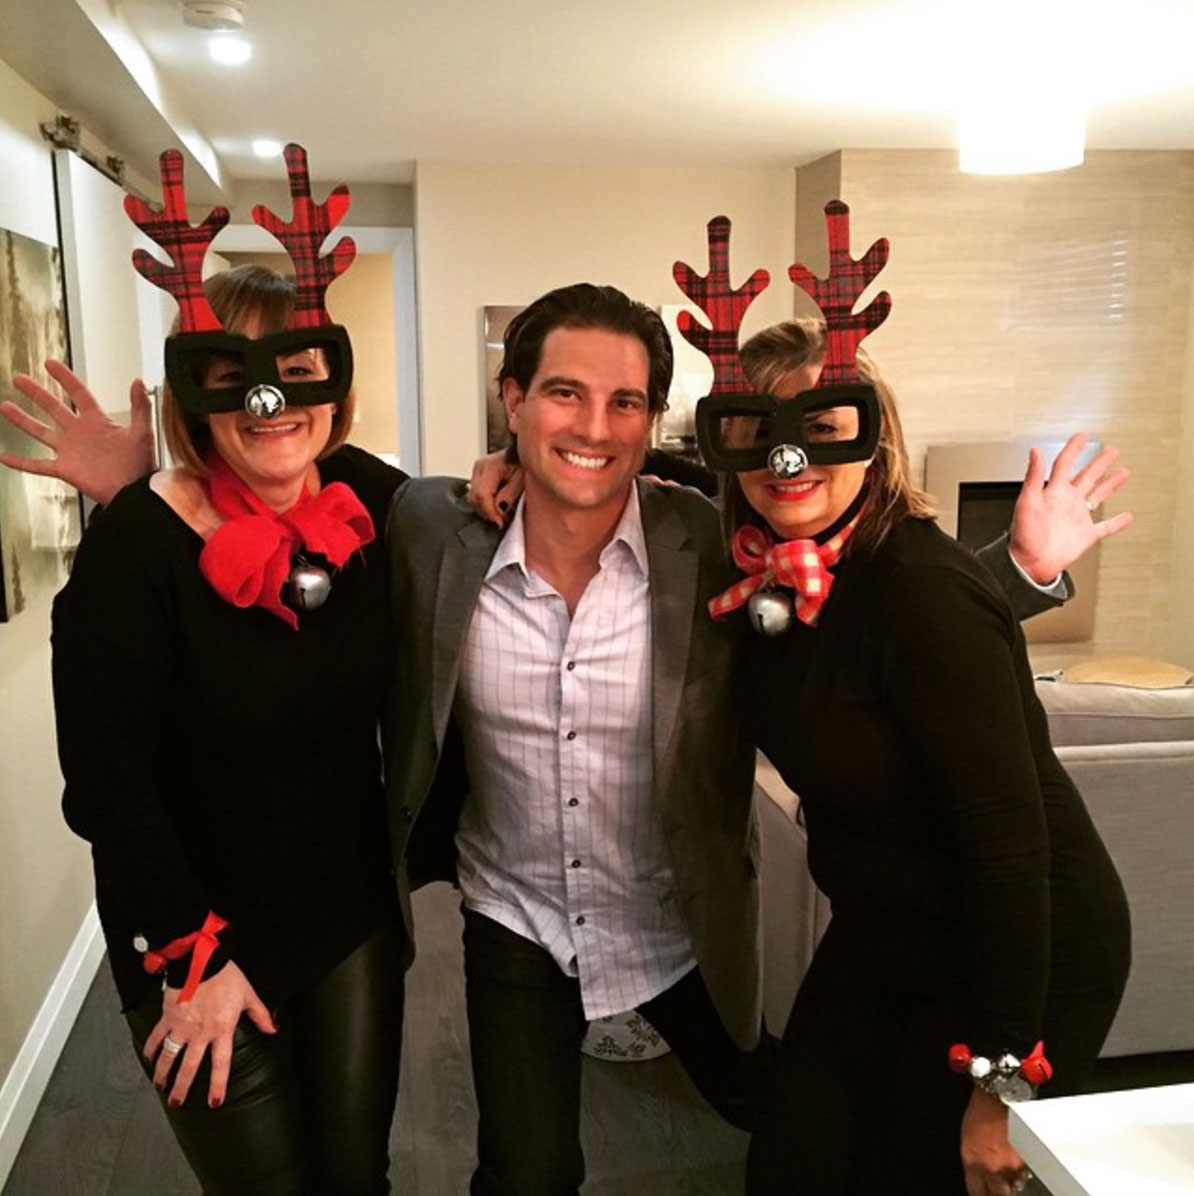 Scott McGillivray with coworkers in reindeer masks